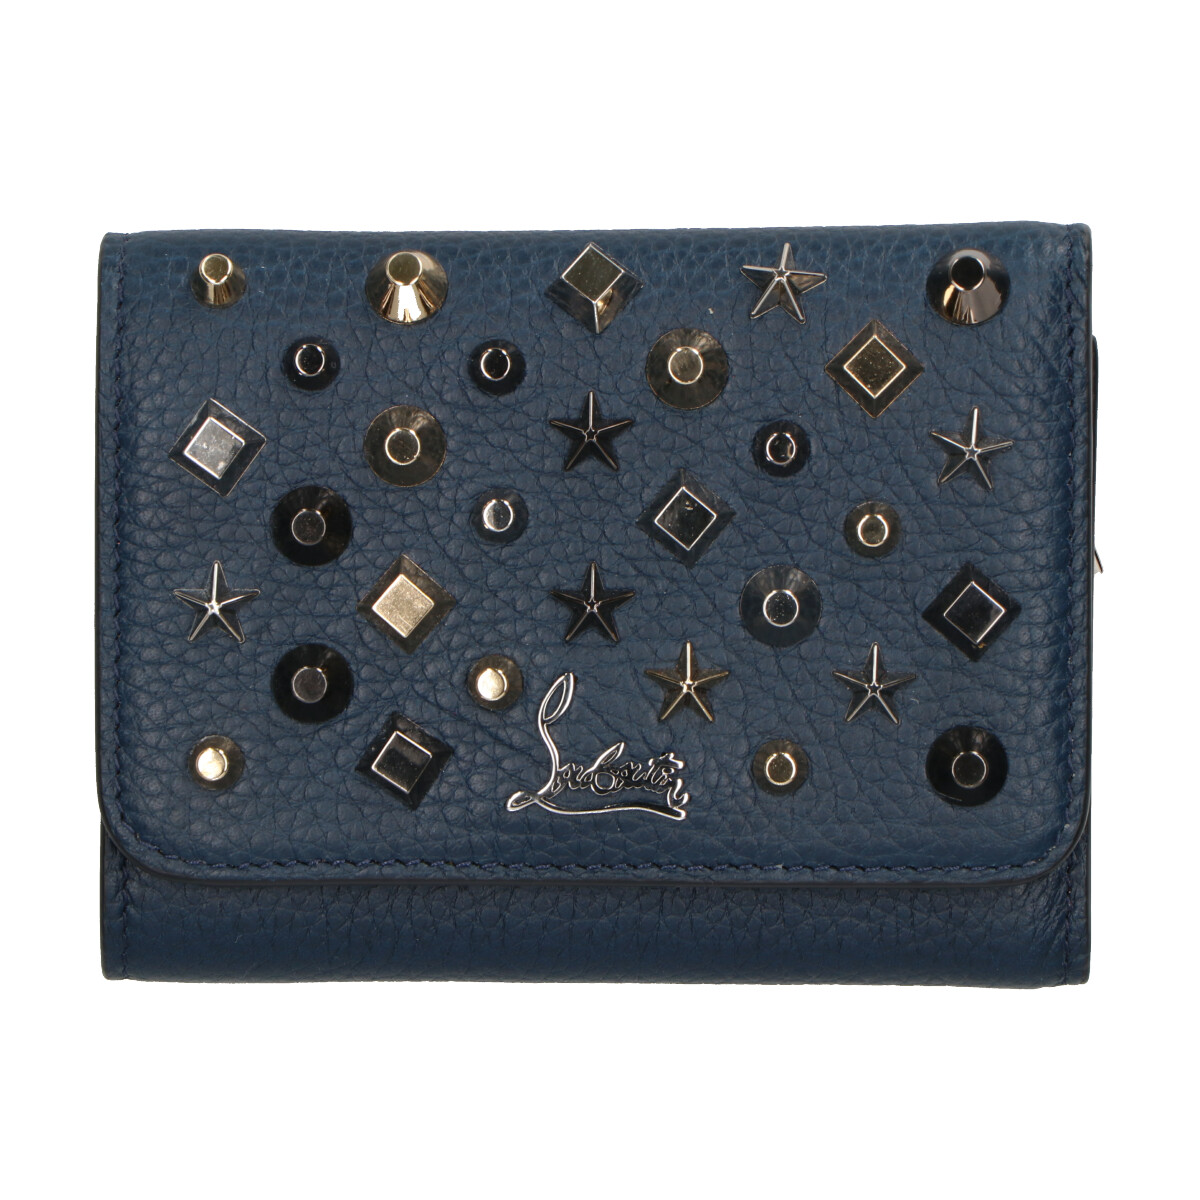 クリスチャンルブタンのMacaron tri-fold embellished leather wallet　スター スクエア マルチスタッズ コンパクトウォレットの買取実績です。